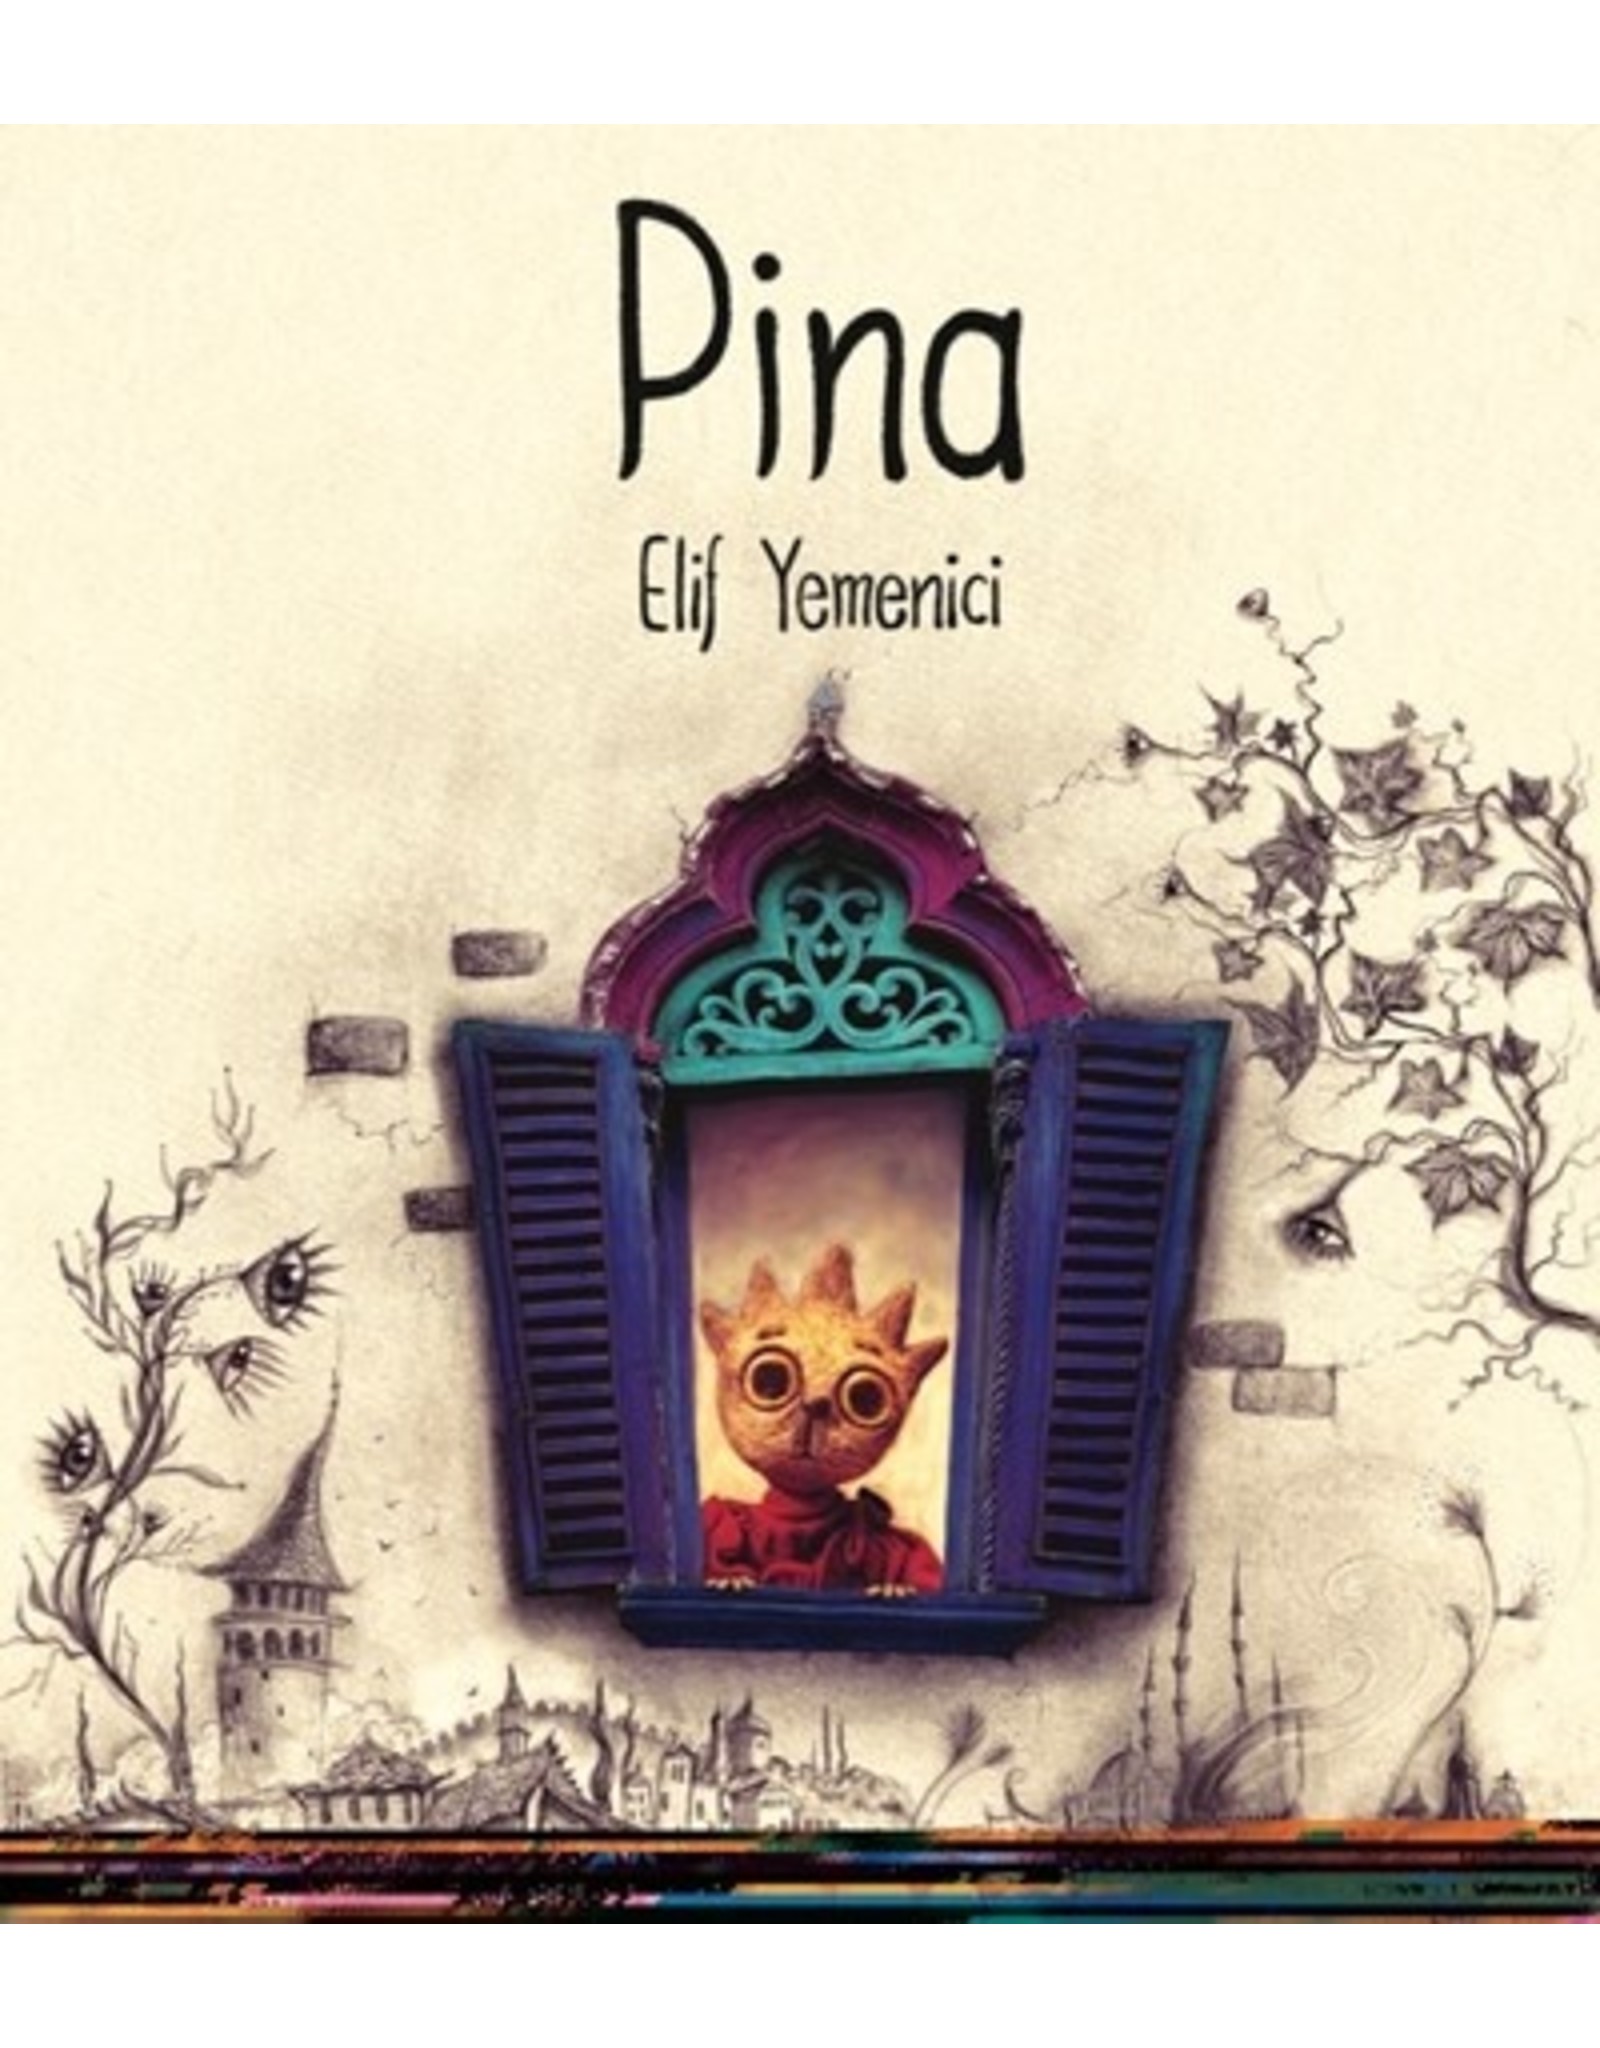 Pina by Elif Yemenici